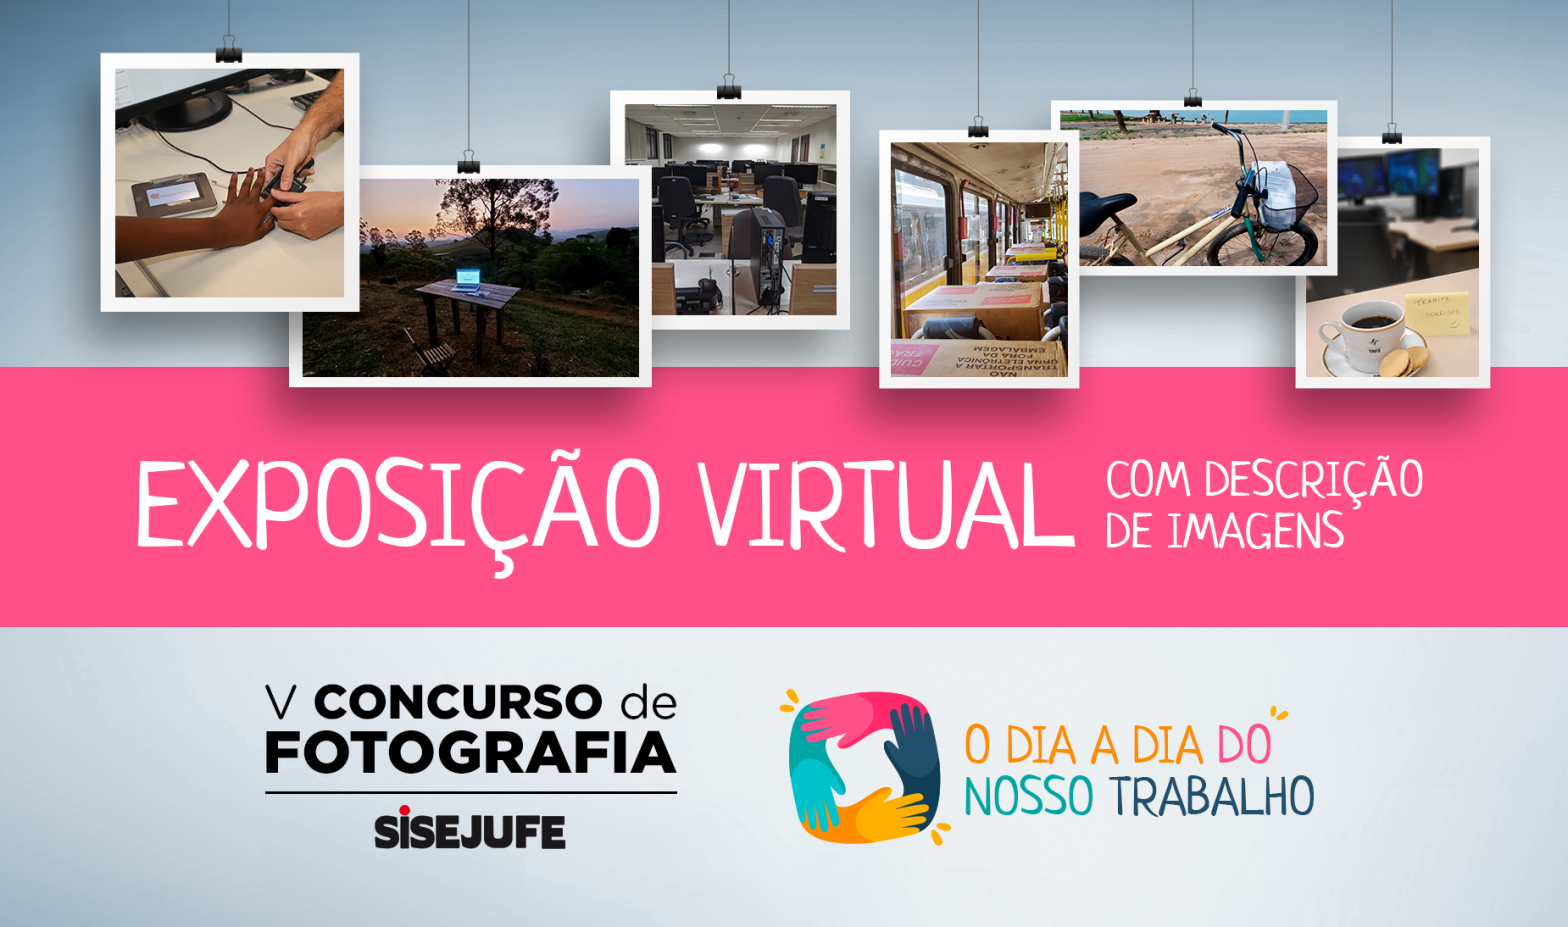 Assista à exposição virtual das fotos vencedores do V Concurso de Fotografia do Sisejufe, com audiodescrição das imagens, SISEJUFE